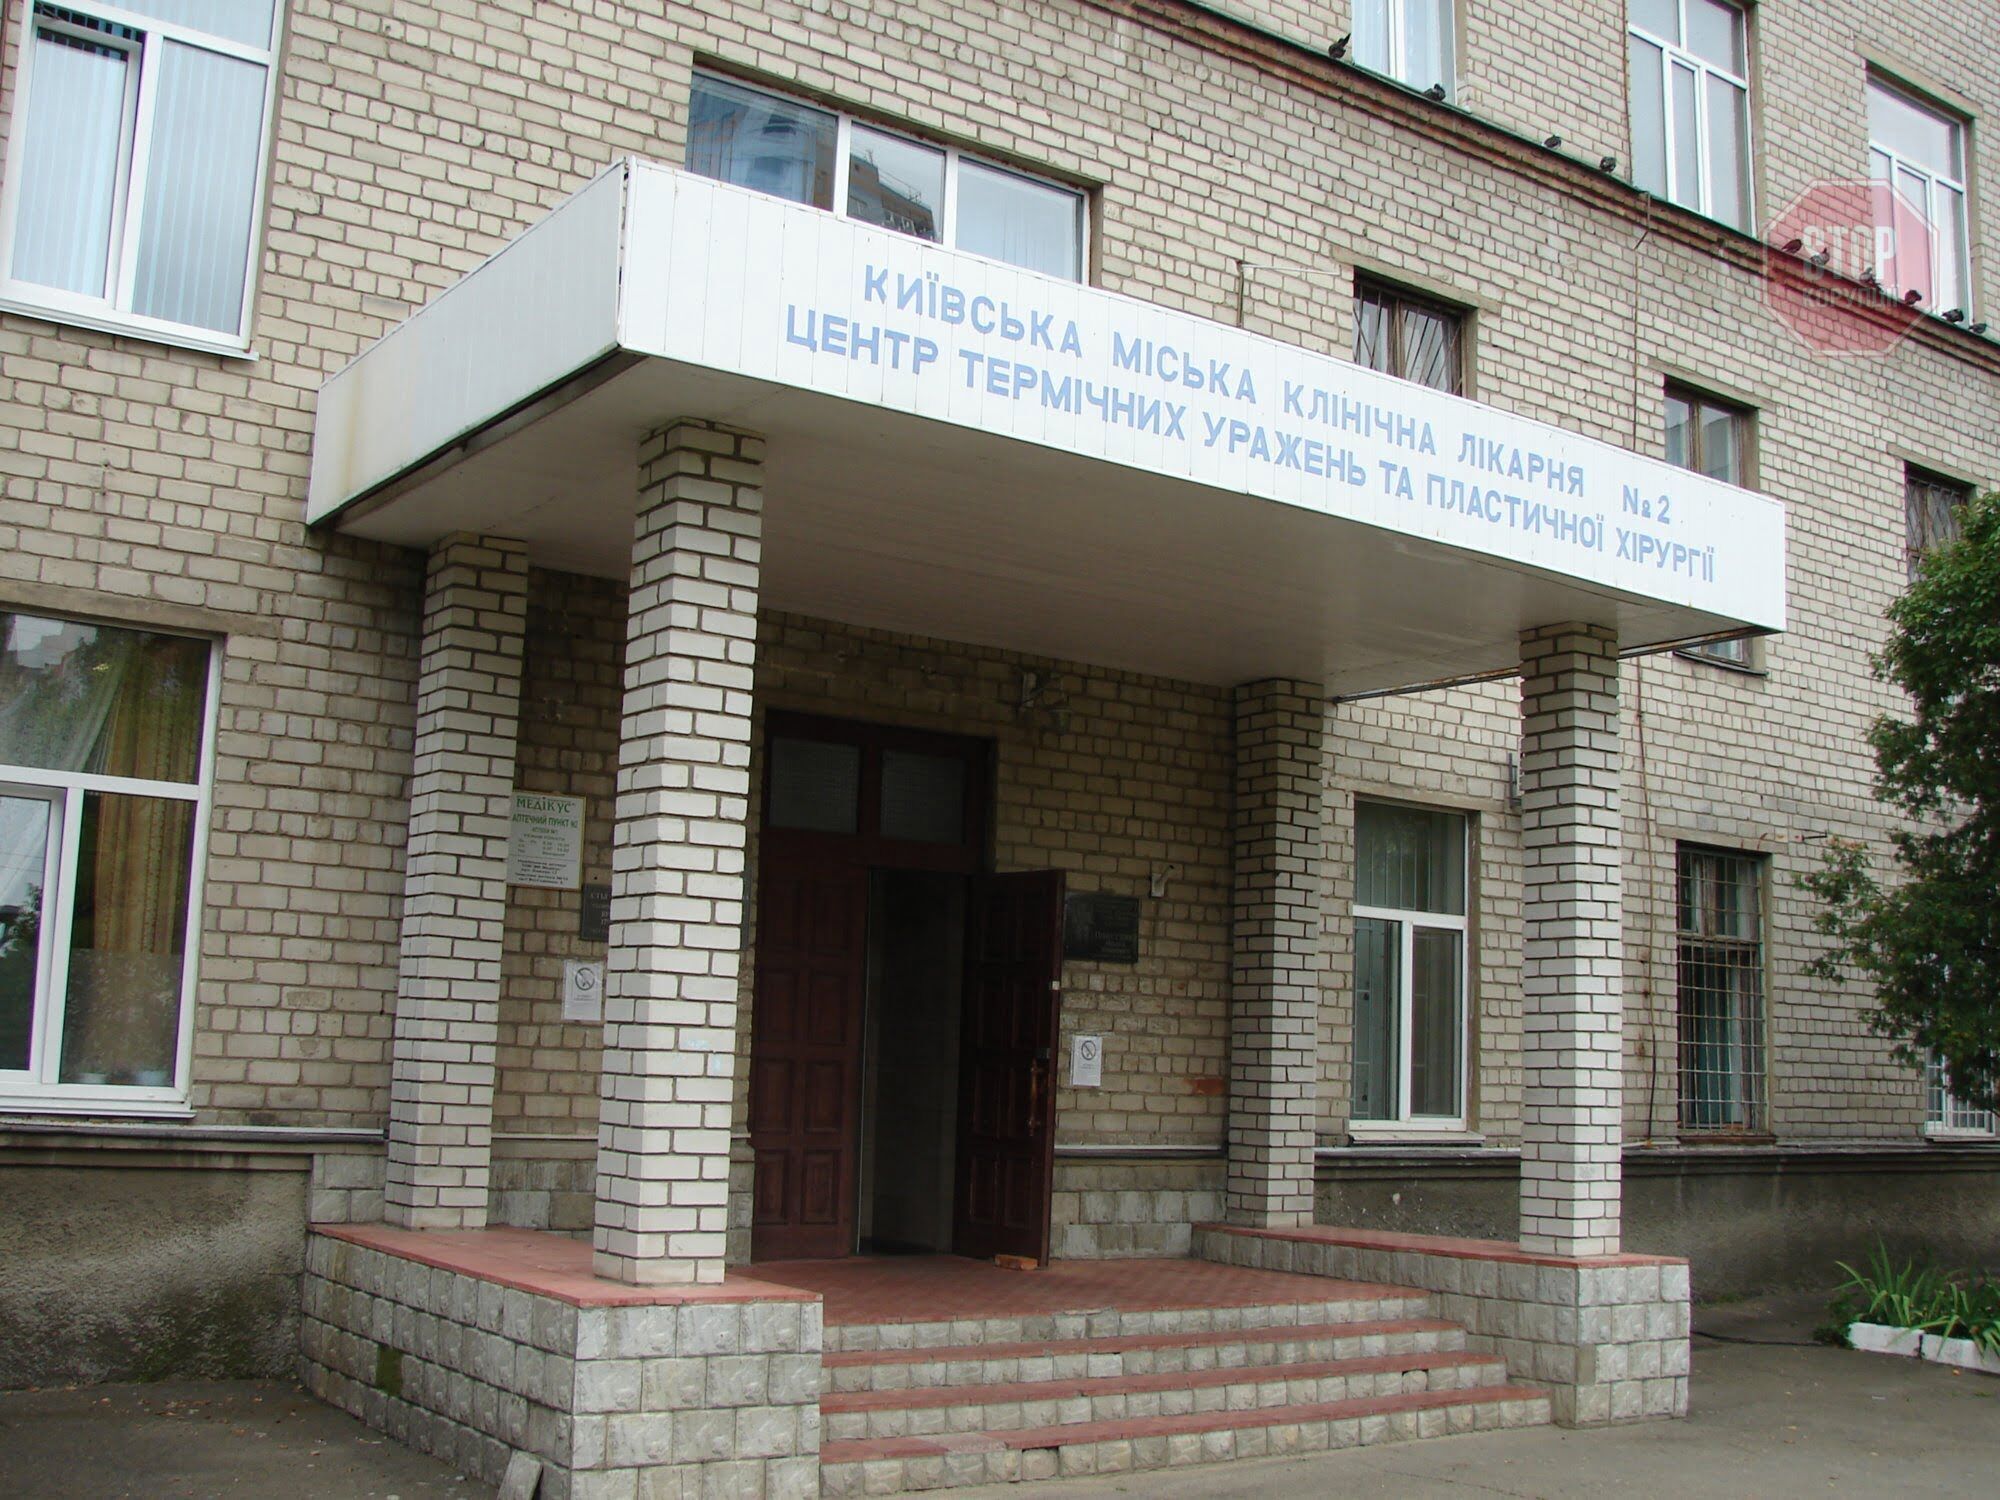  Київська міська клінічна лікарня №2